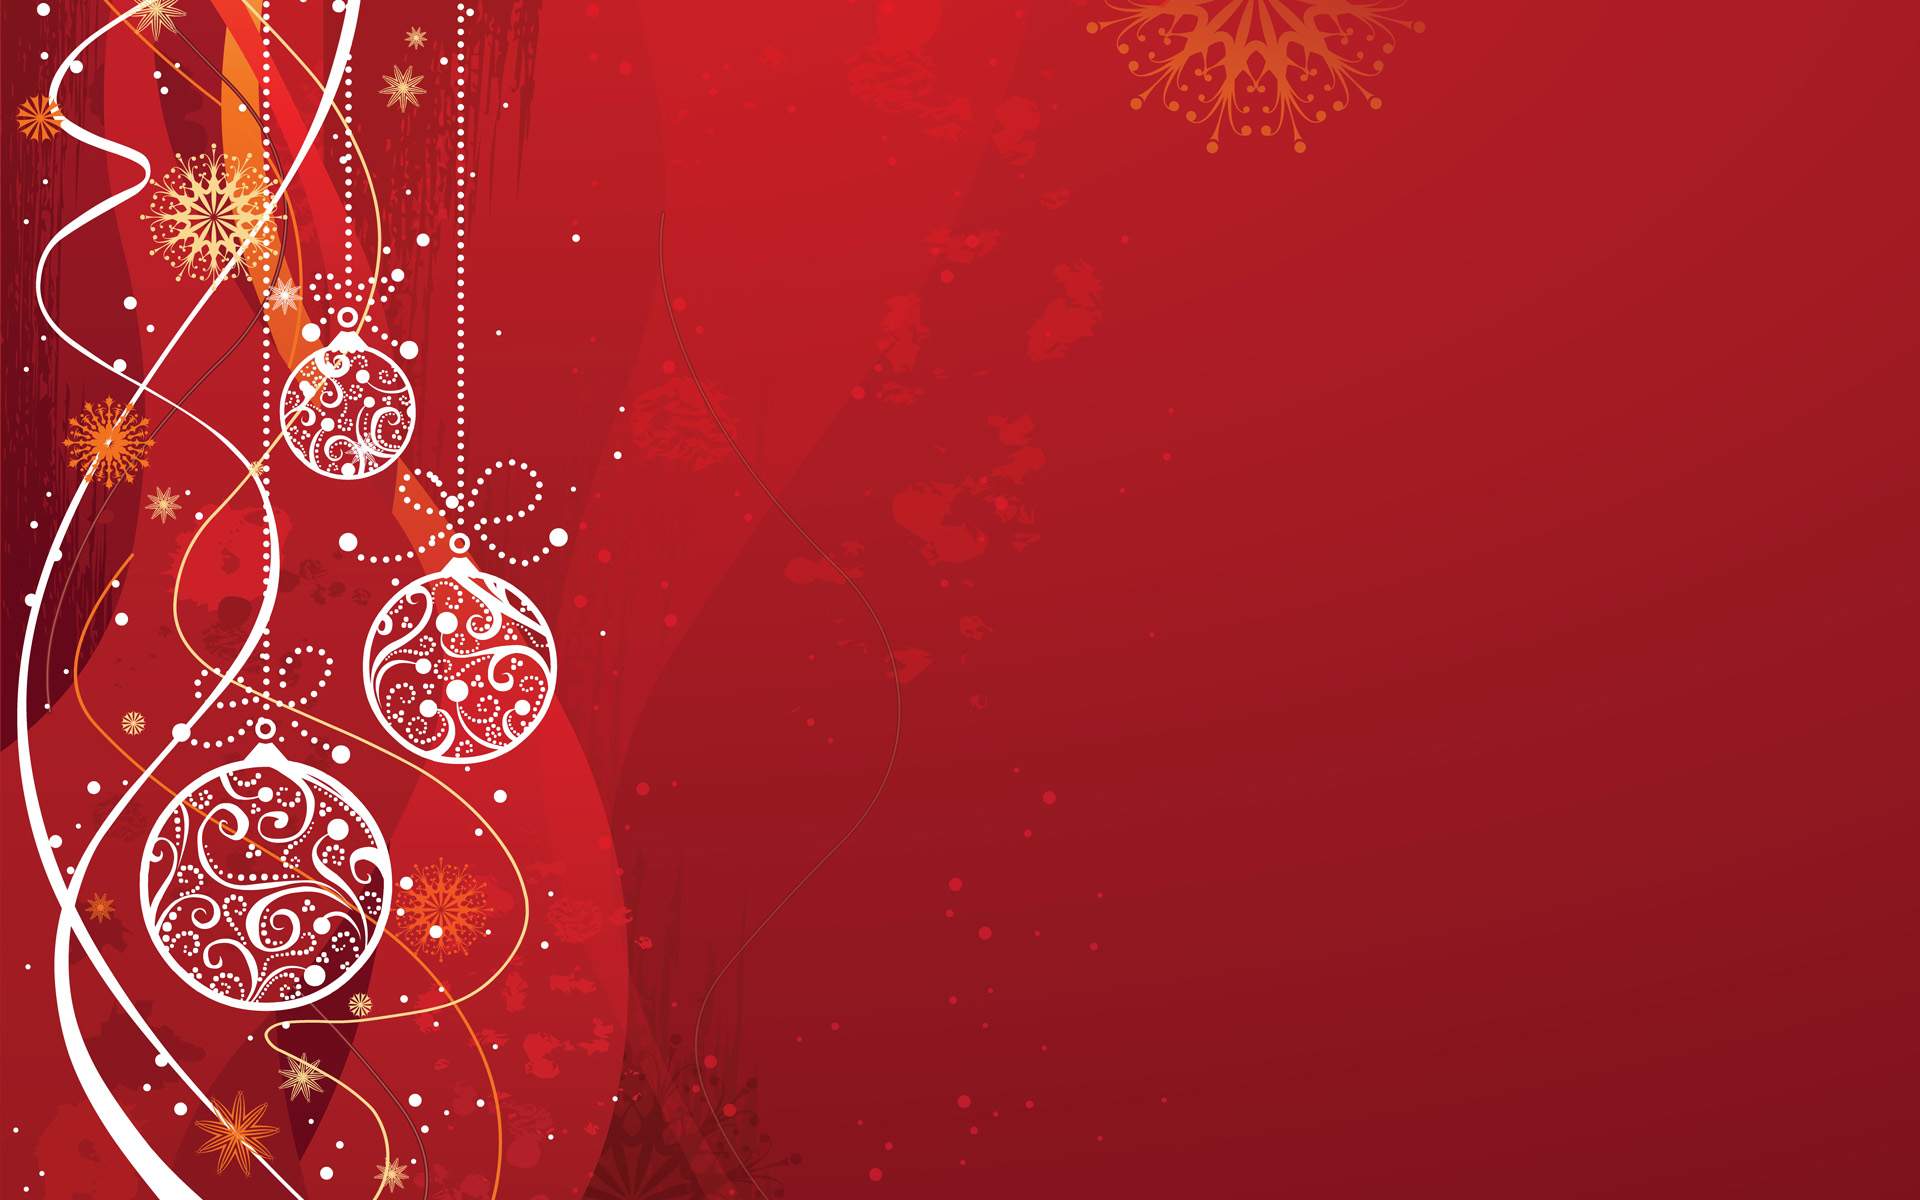 Chào đón mùa Giáng sinh sôi động với hình nền Desktop Noel miễn phí! Với các hình nền đầy sắc màu, bạn sẽ có nhiều lựa chọn để trang trí cho thiết bị của bạn. Chất lượng hình ảnh sắc nét và đẹp mắt sẽ mang lại cảm giác tinh tế và chỉn chu cho thiết bị của bạn. Tải về ngay hình nền Desktop Noel miễn phí và trang trí cho thiết bị của bạn ngay bây giờ!